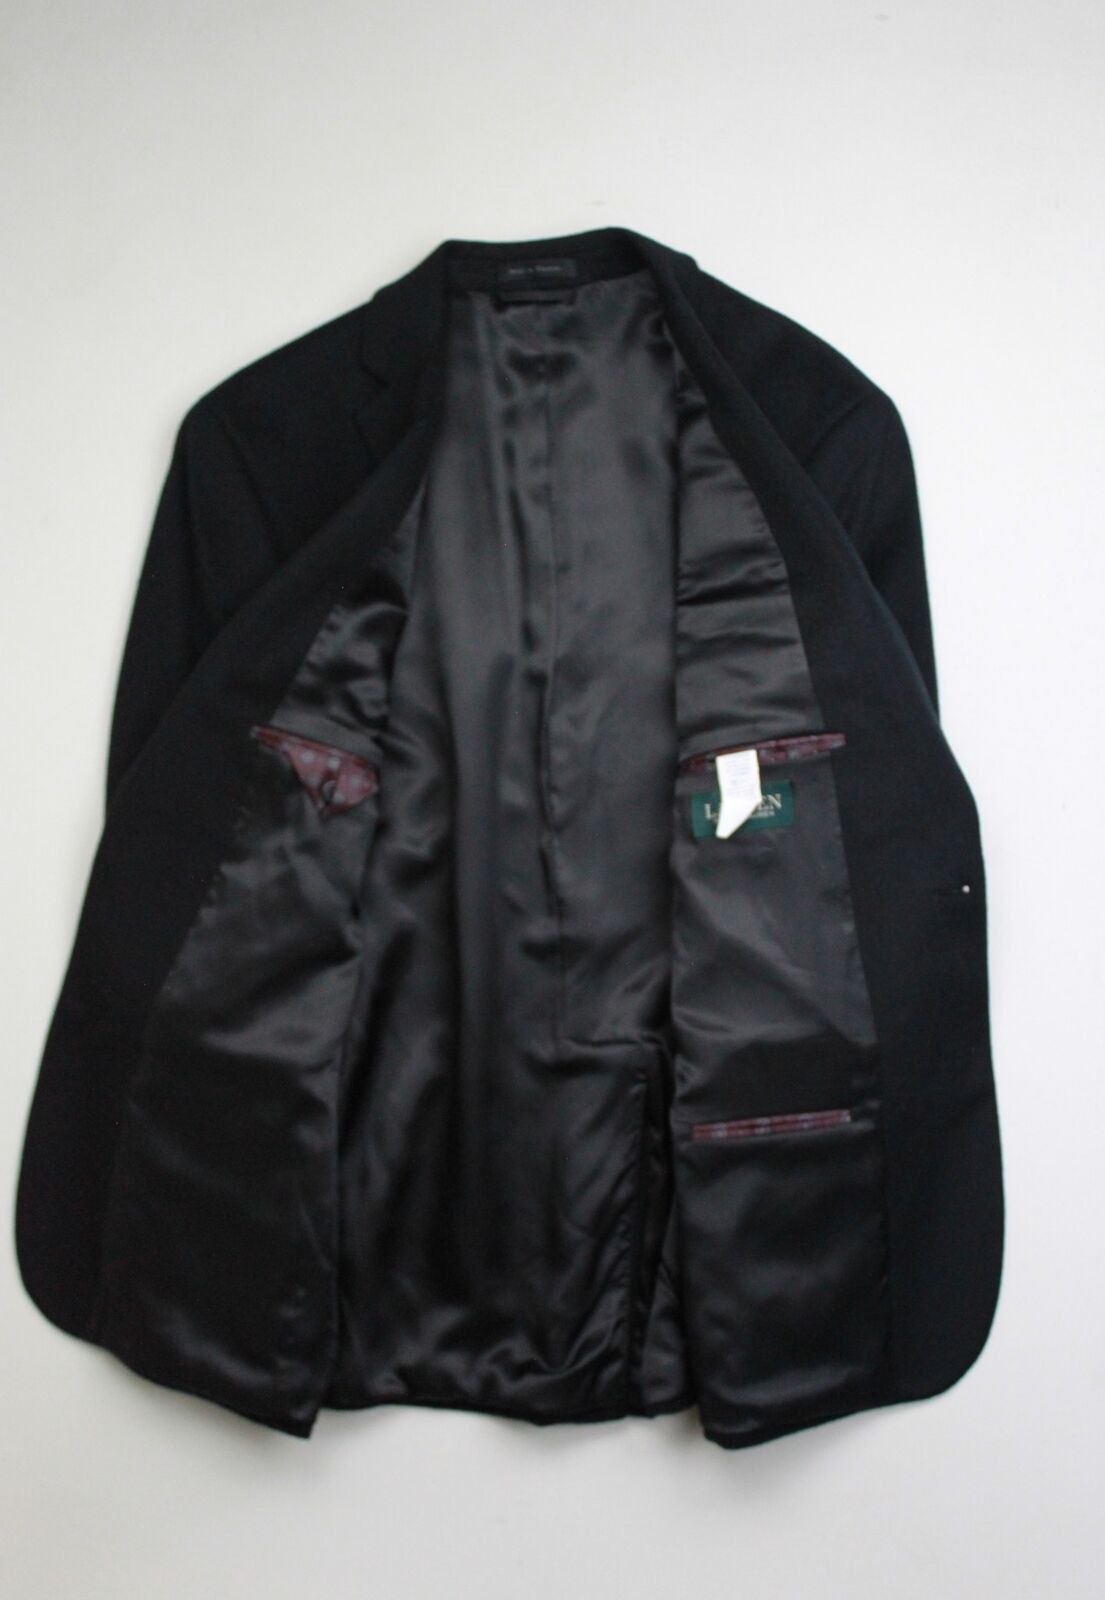 Lauren Ralph Lauren Luxury Wool/Cashmere-Blend Classic-Fit Sport Coat 40L Black